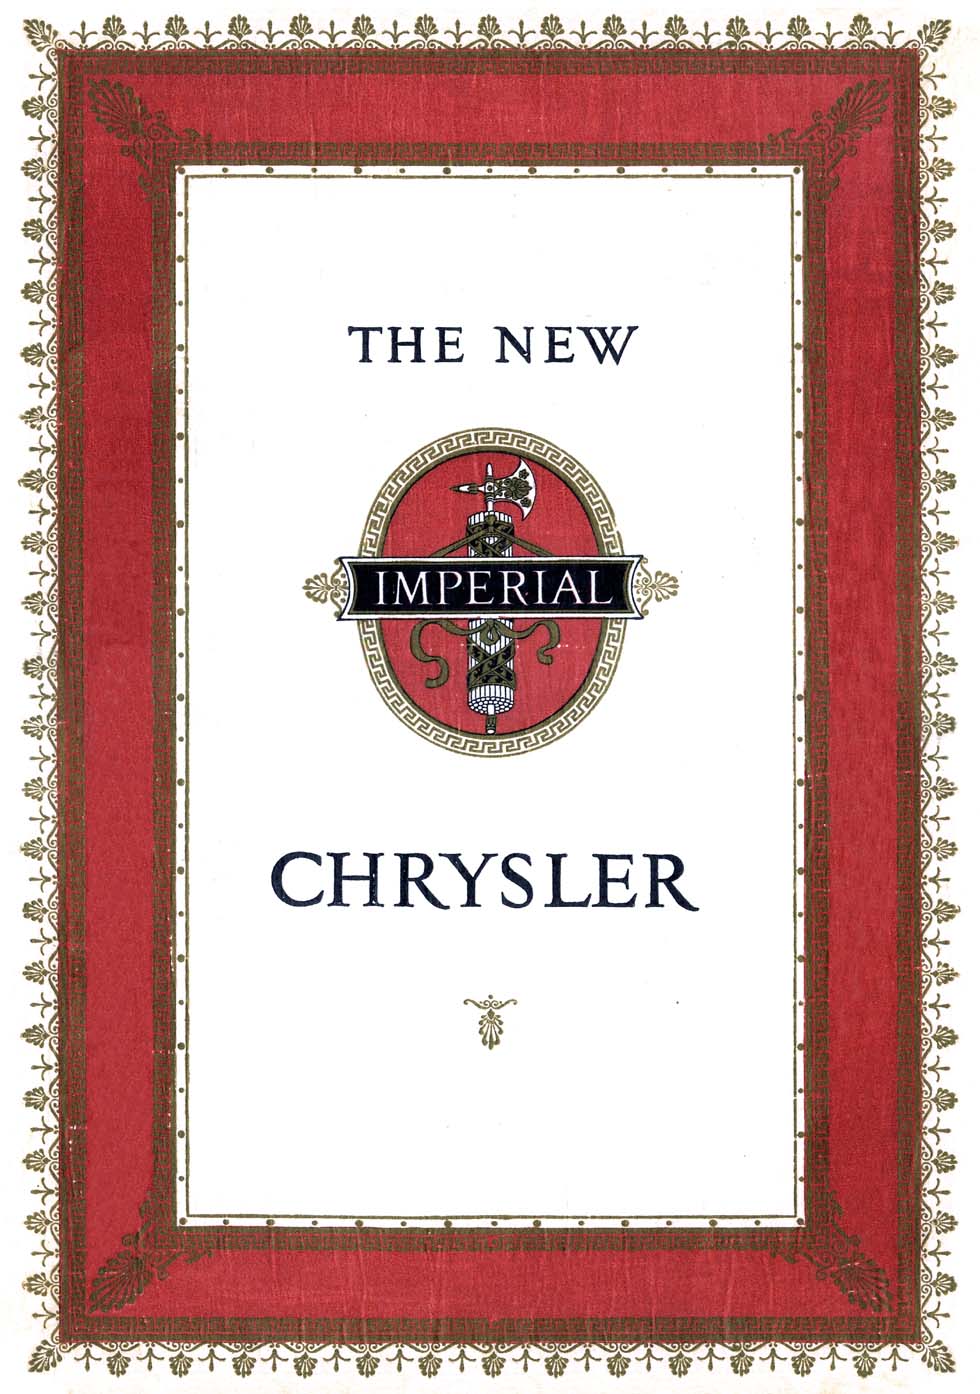 1926 Chrysler Imperial Brochure